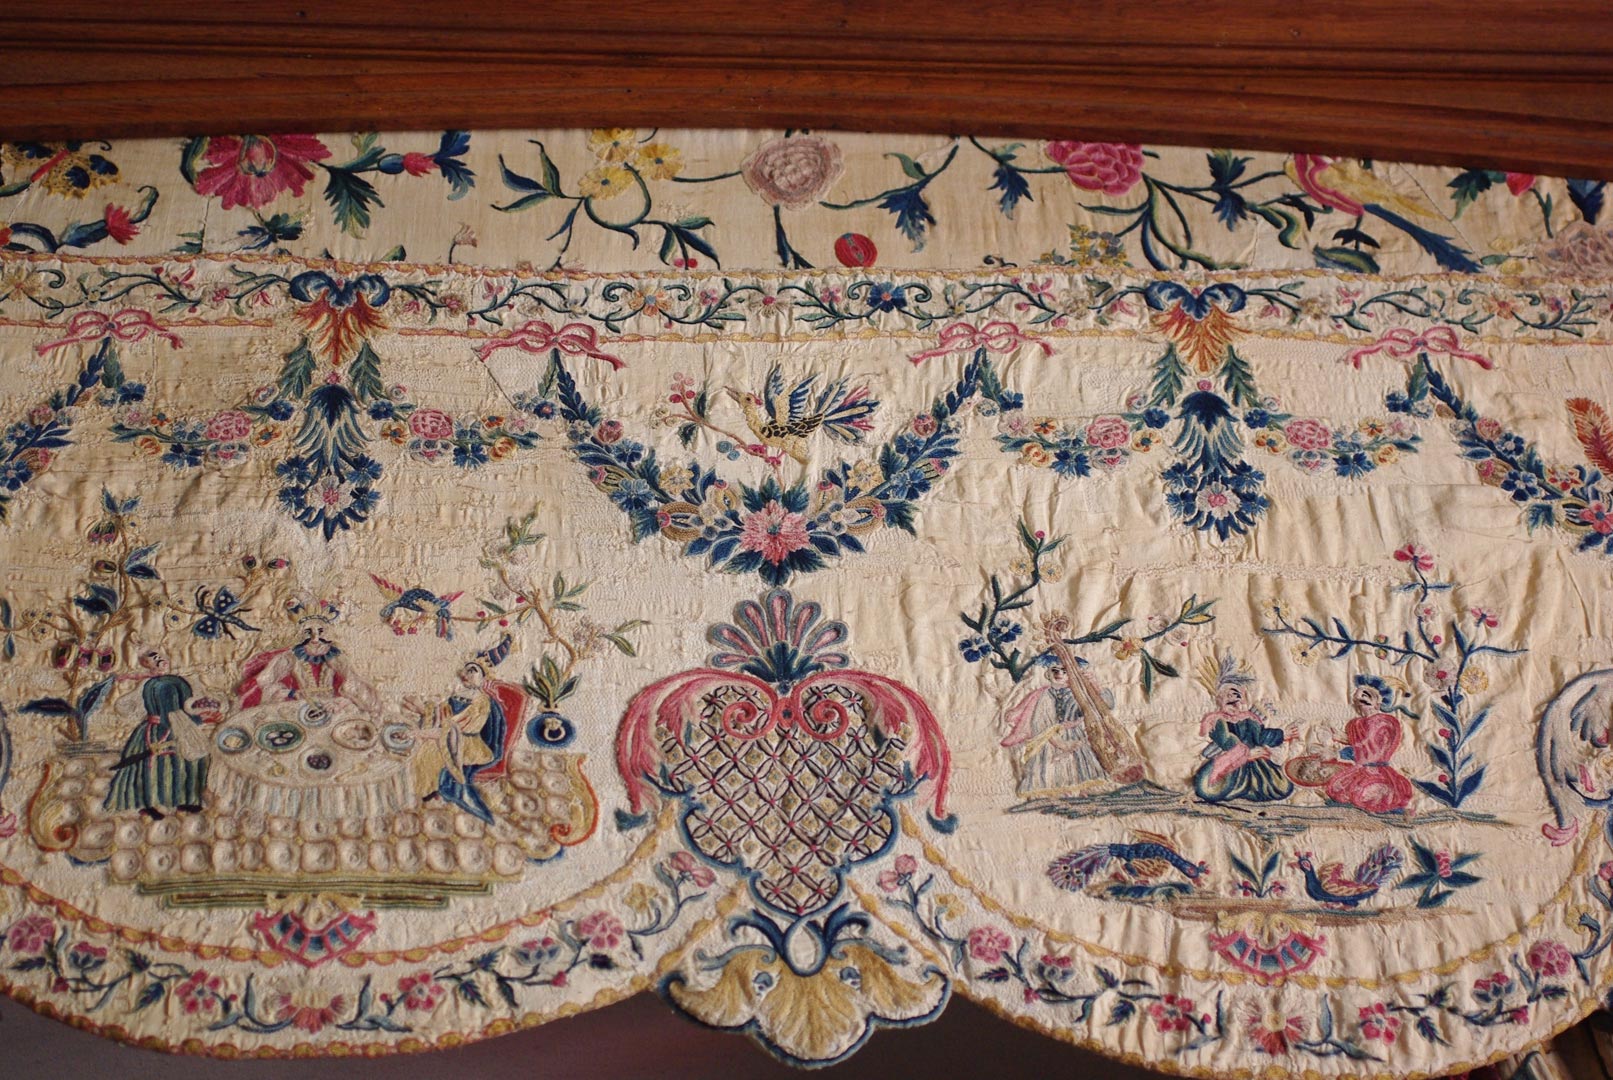 Les tissus brodés de la chambre de la Marquise, par Mme Chantal Carpentier grâce au soutien du Fonds Pierre-François Tilmon au sein de la FRB.